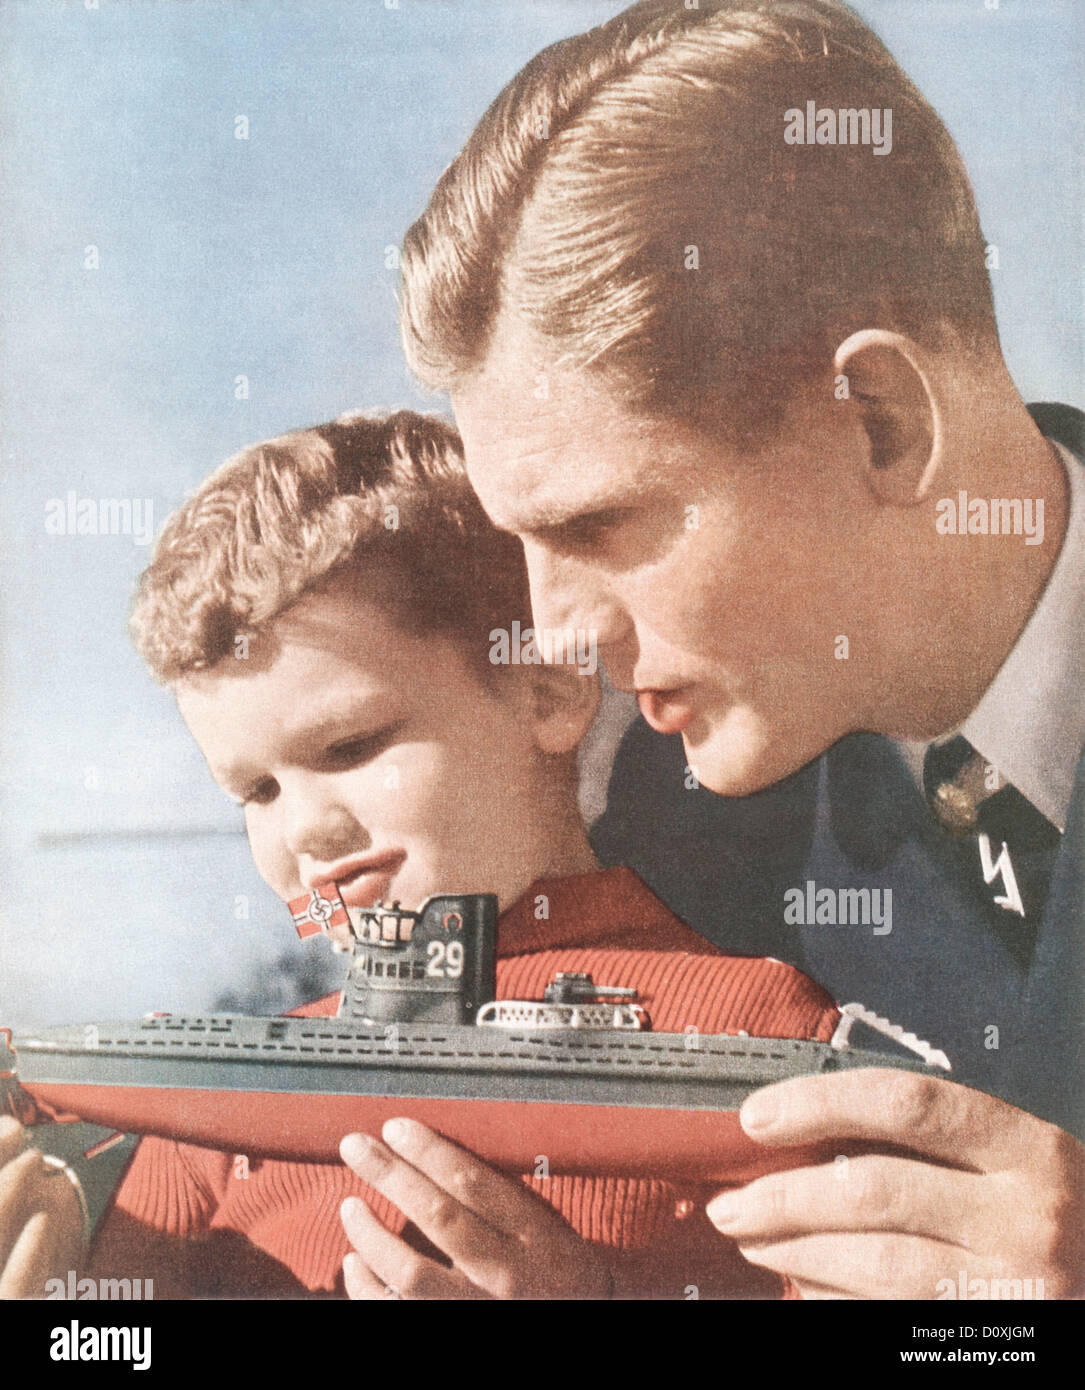 Voile, croix gammée, Allemand, père, fils, jouet, navire, Nazi, drapeau, la seconde guerre mondiale, l'Allemagne, 1940, Banque D'Images